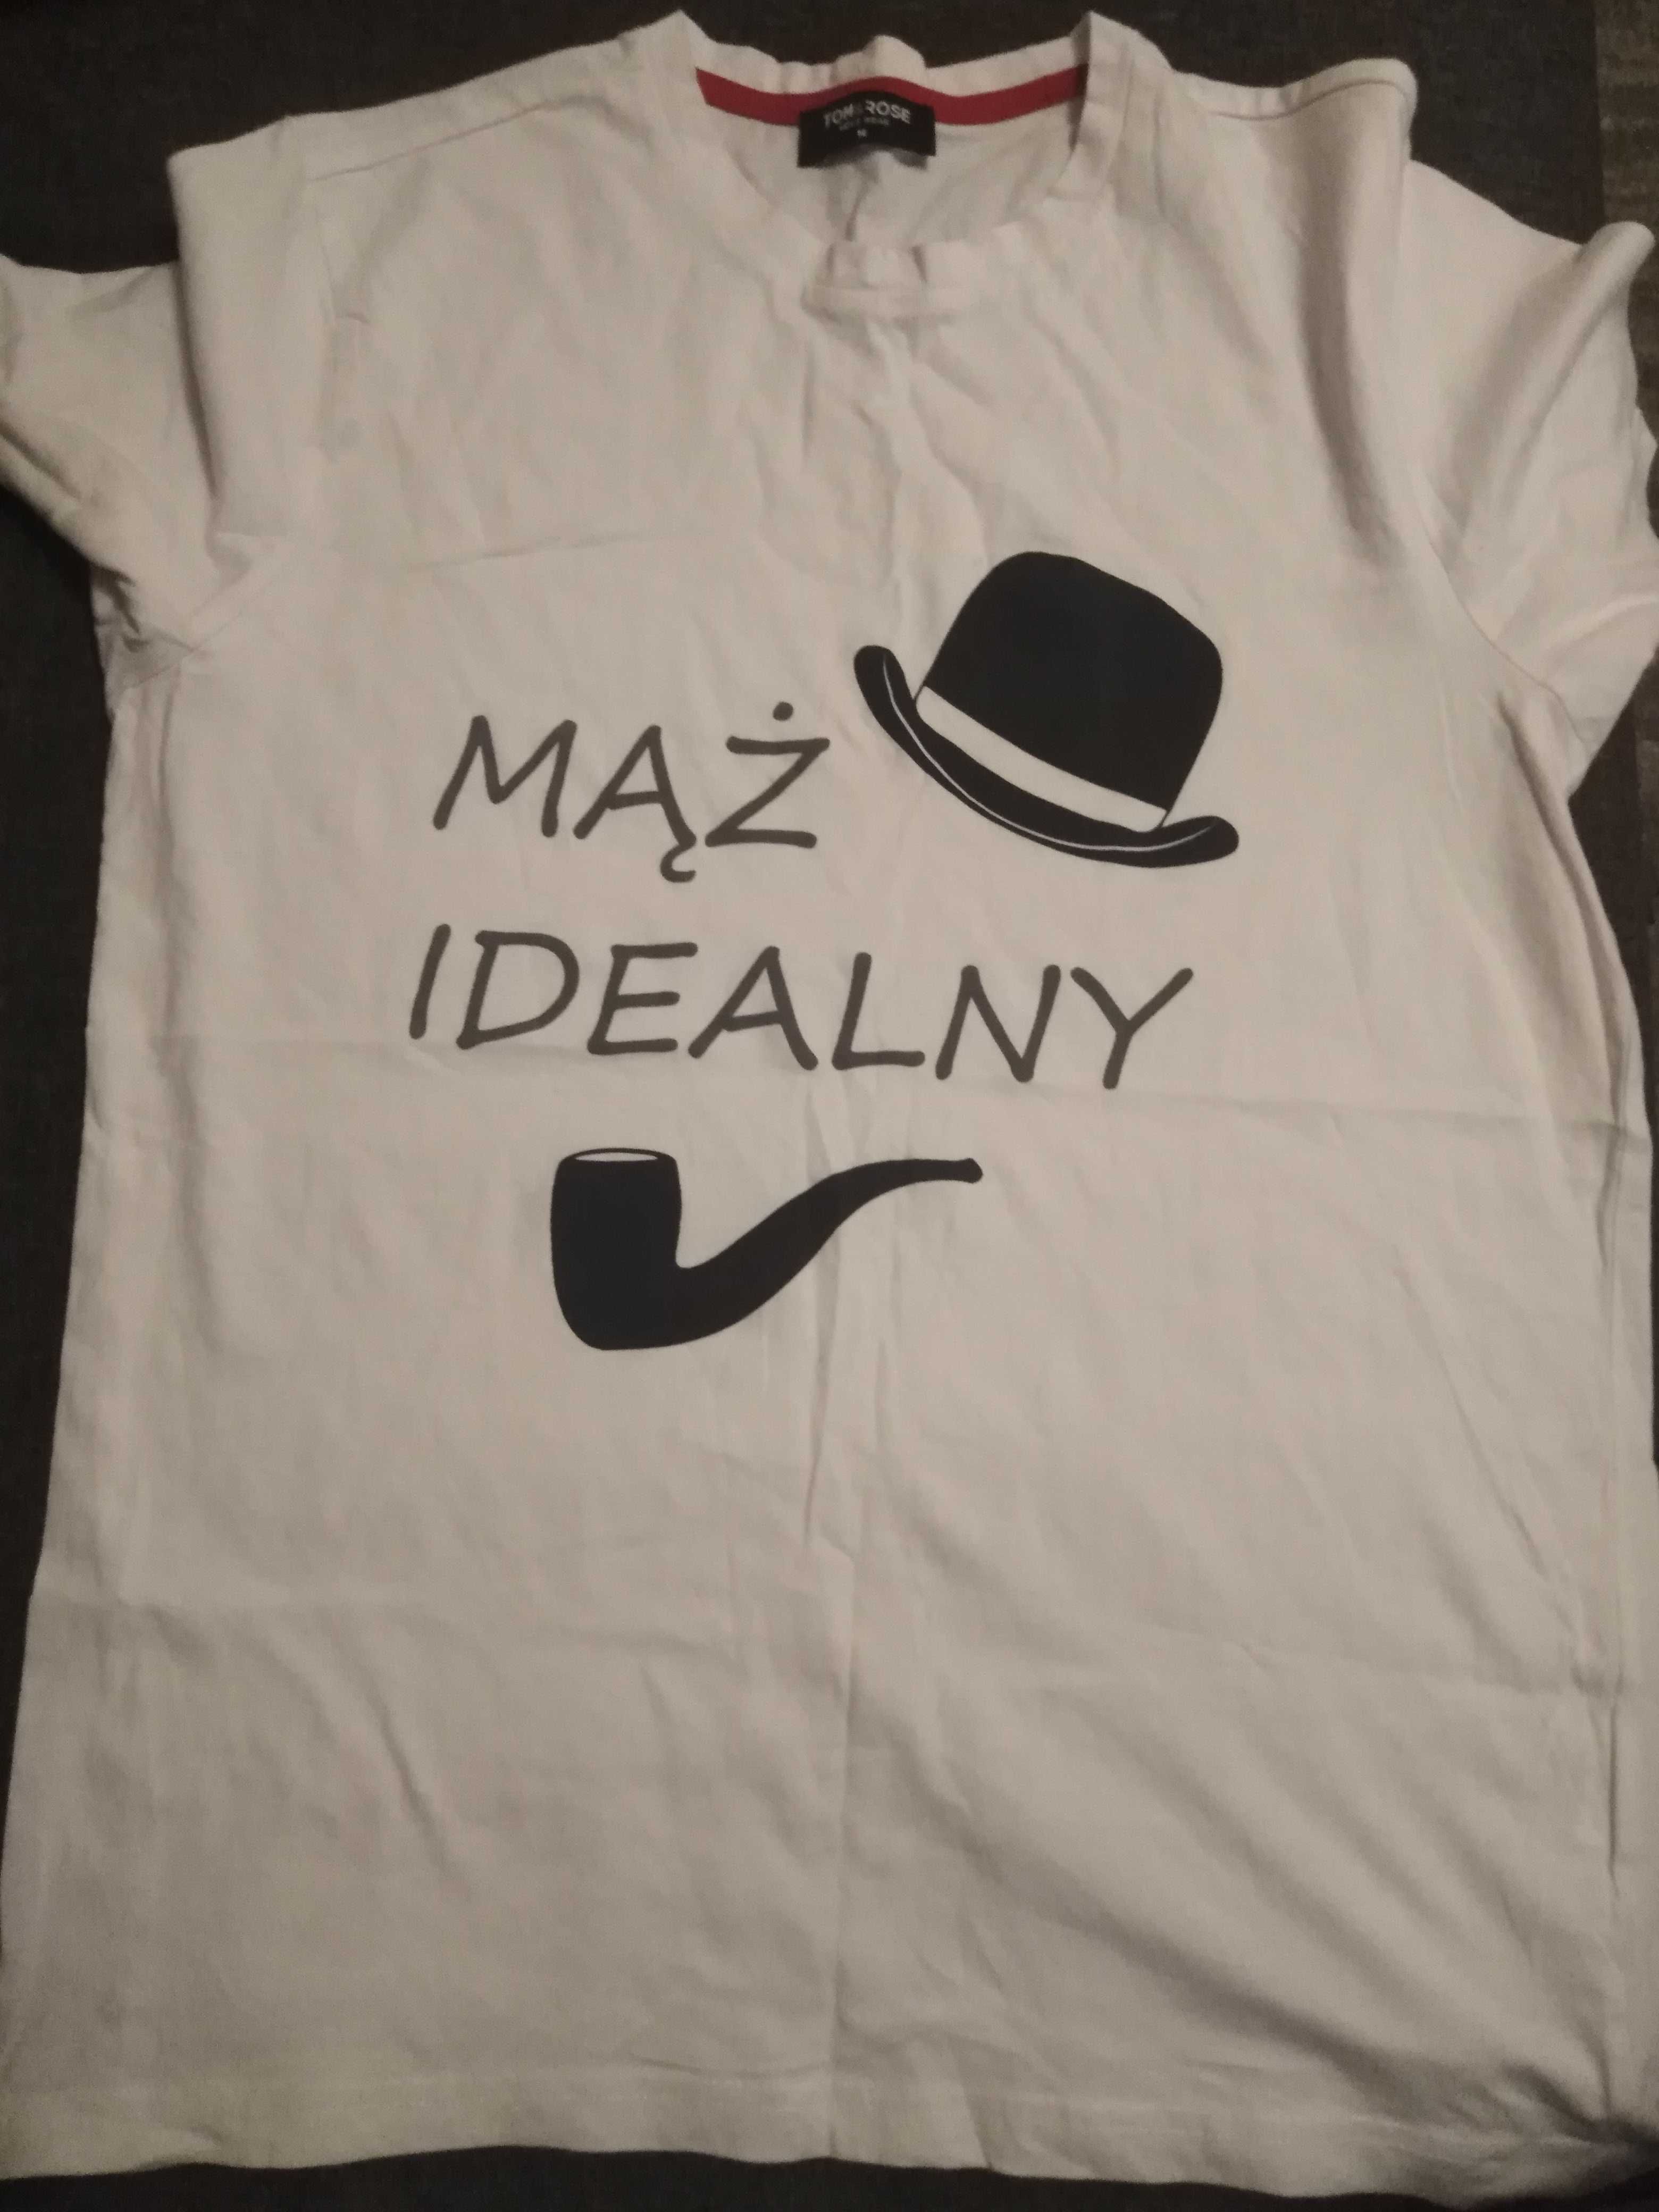 Koszulka, T- shirt, podkoszulka ze śmiesznym nadrukiem  "idealny mąż"